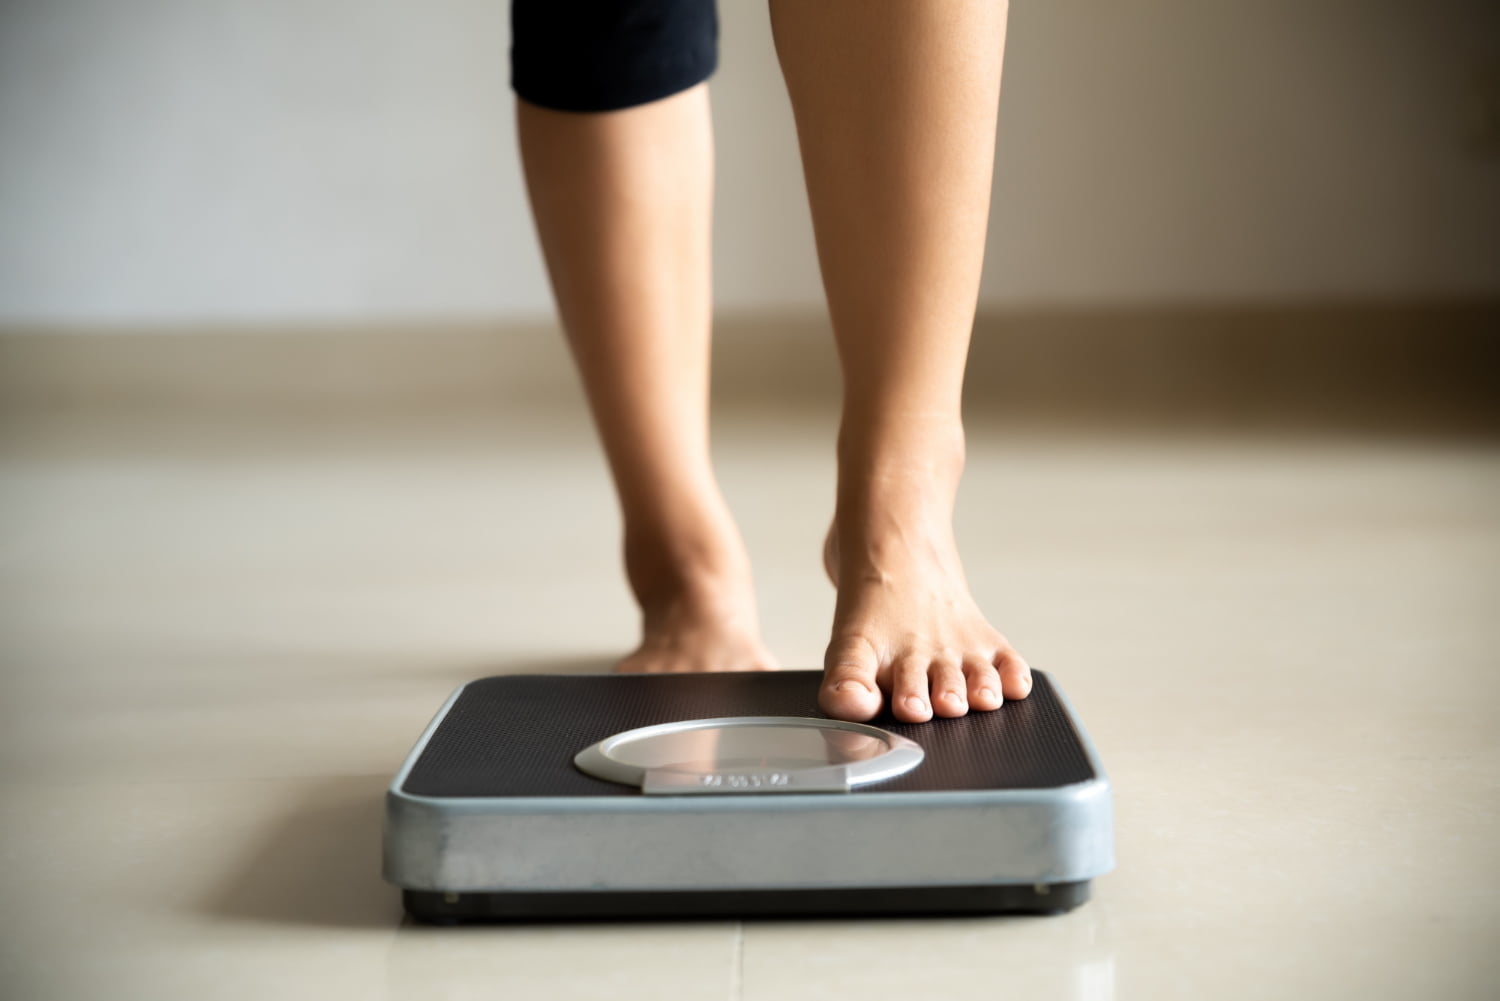 peso ideal / perder 1 kilo a la semana / pérdida de peso / subir de peso / alimentos